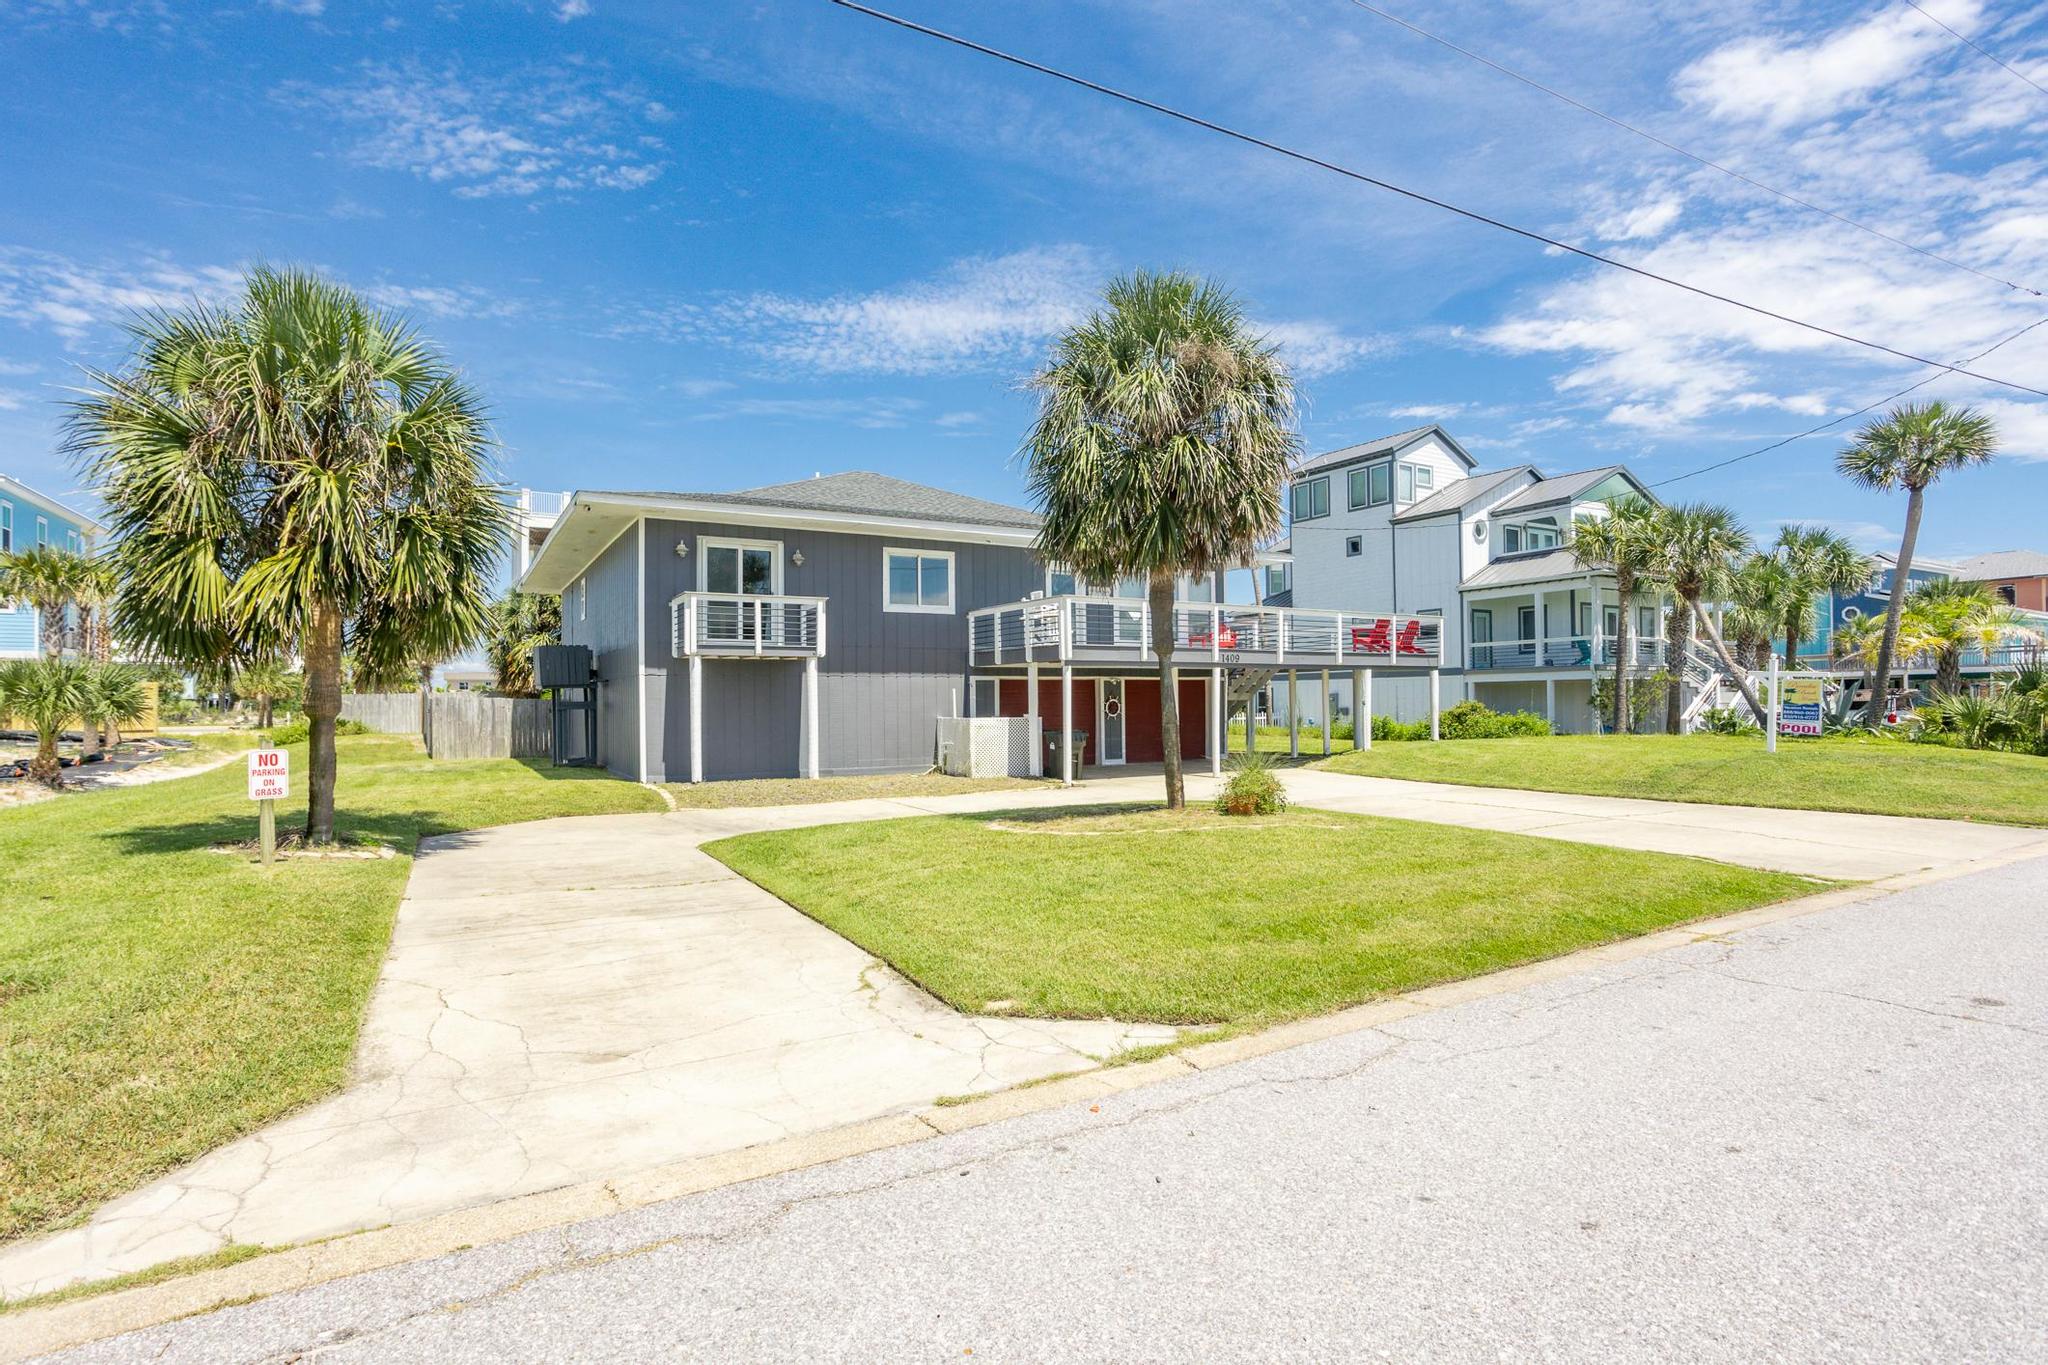 Maldonado 1409 - The Hip * Nautic House / Cottage rental in Pensacola Beach House Rentals in Pensacola Beach Florida - #25